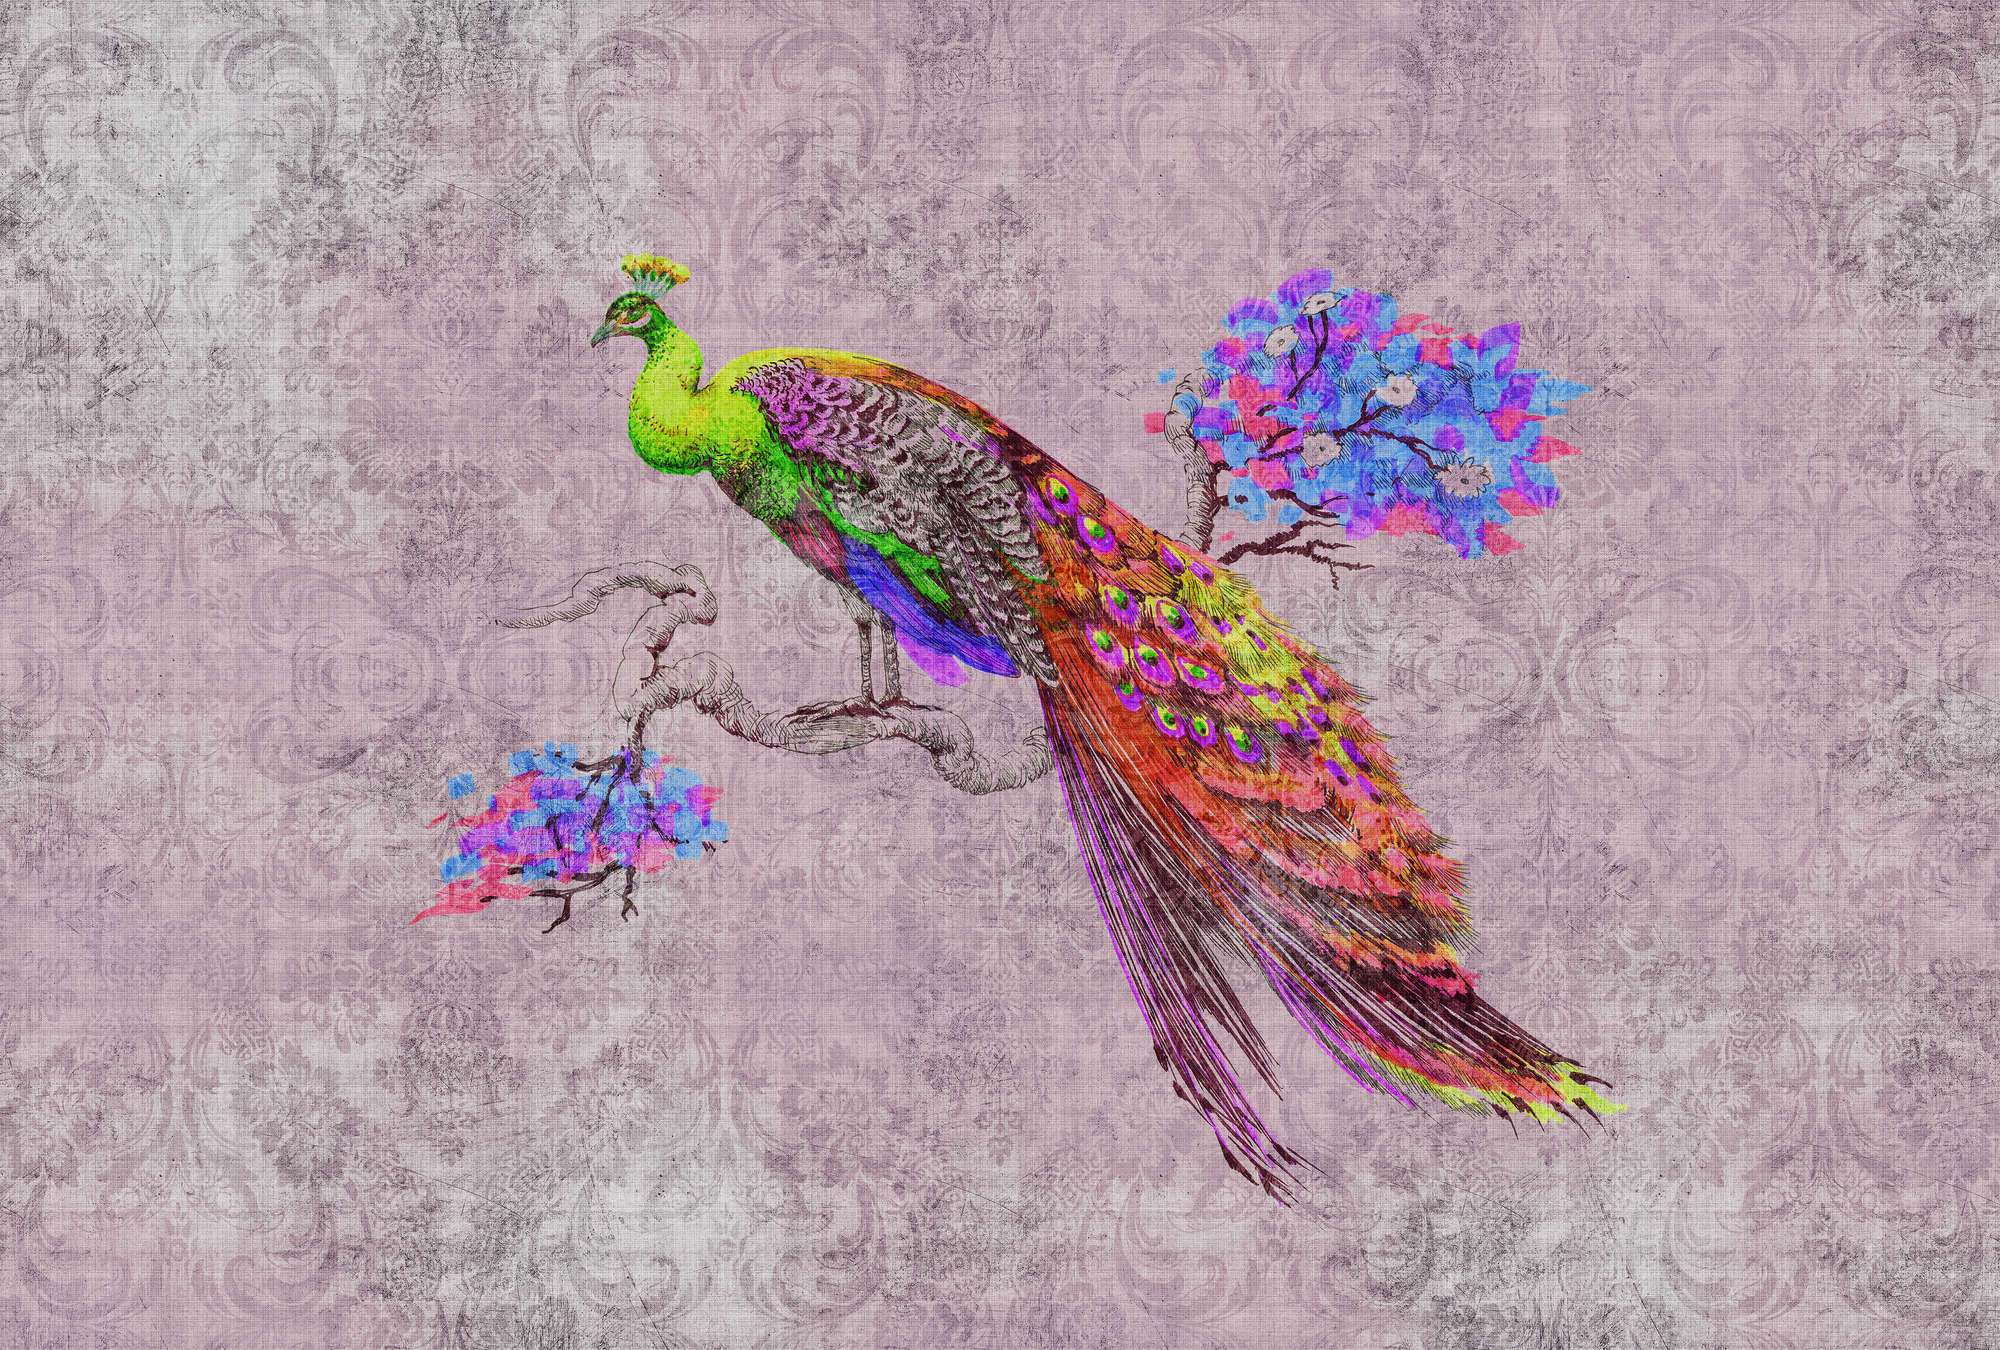             Peacock 2 - Pauwenbehang met pauwenmotief & ornament patroon in natuurlijke linnenstructuur - groen, roze | parelmoer glad vlies
        